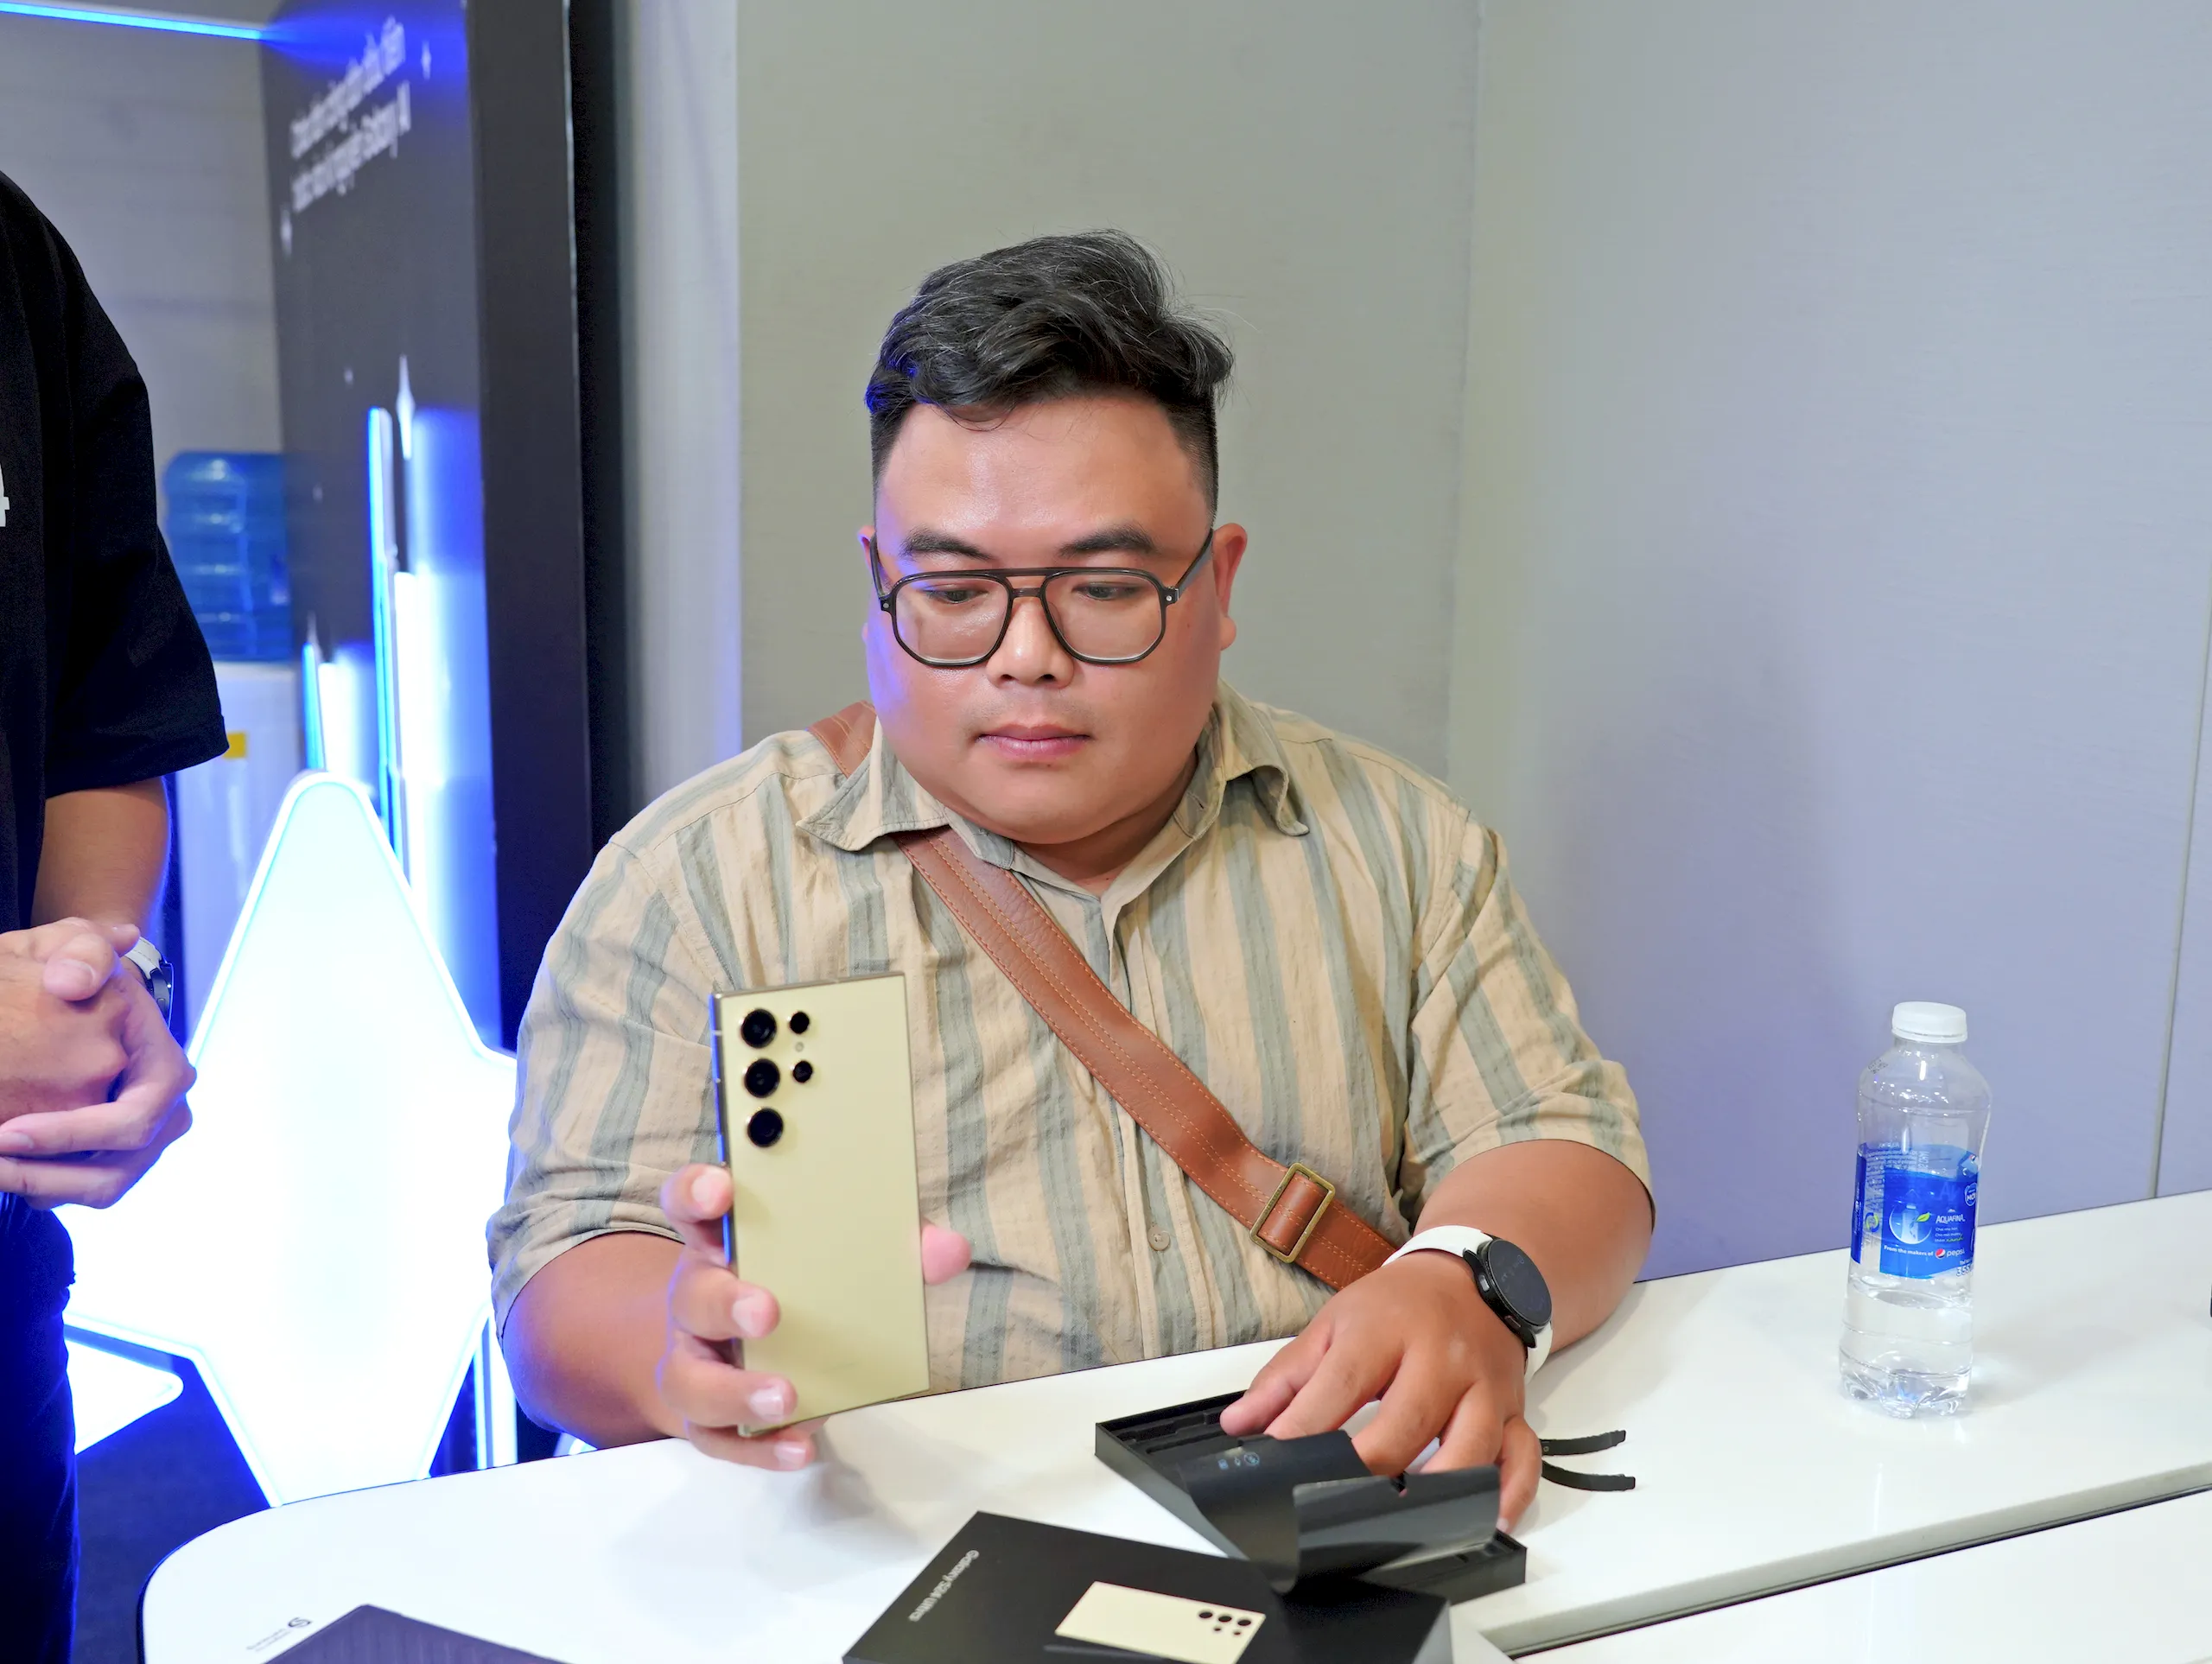 Minh Tuấn Mobile chính thức mở bán sớm Galaxy S24 Series